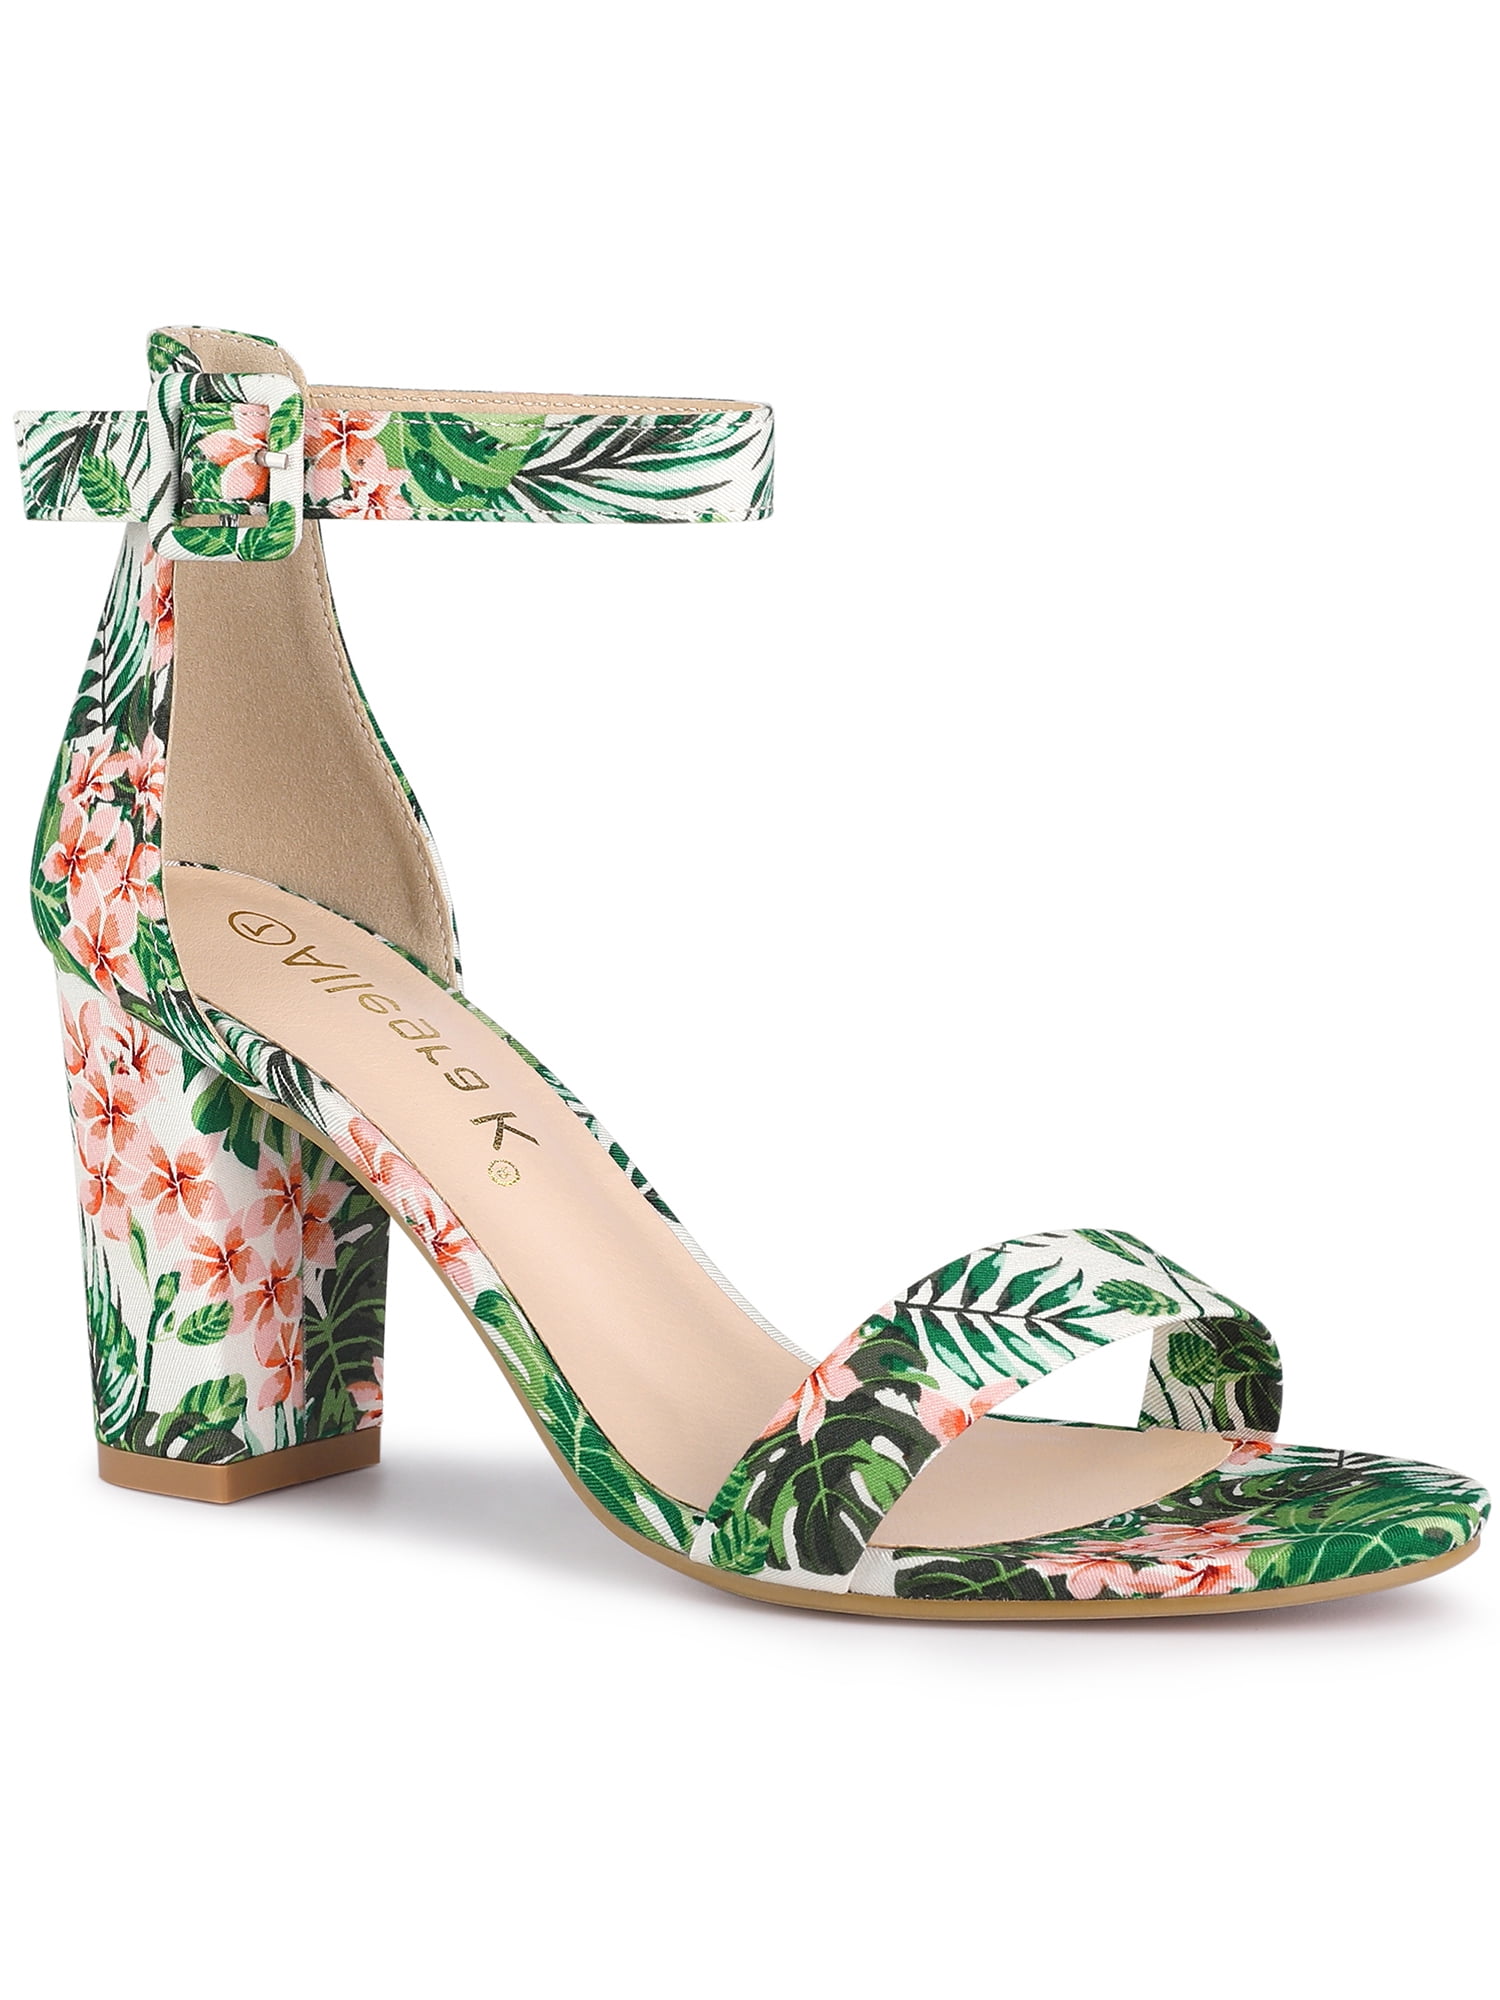 Buy Beige Heeled Sandals for Women by VIVIANA Online | Ajio.com